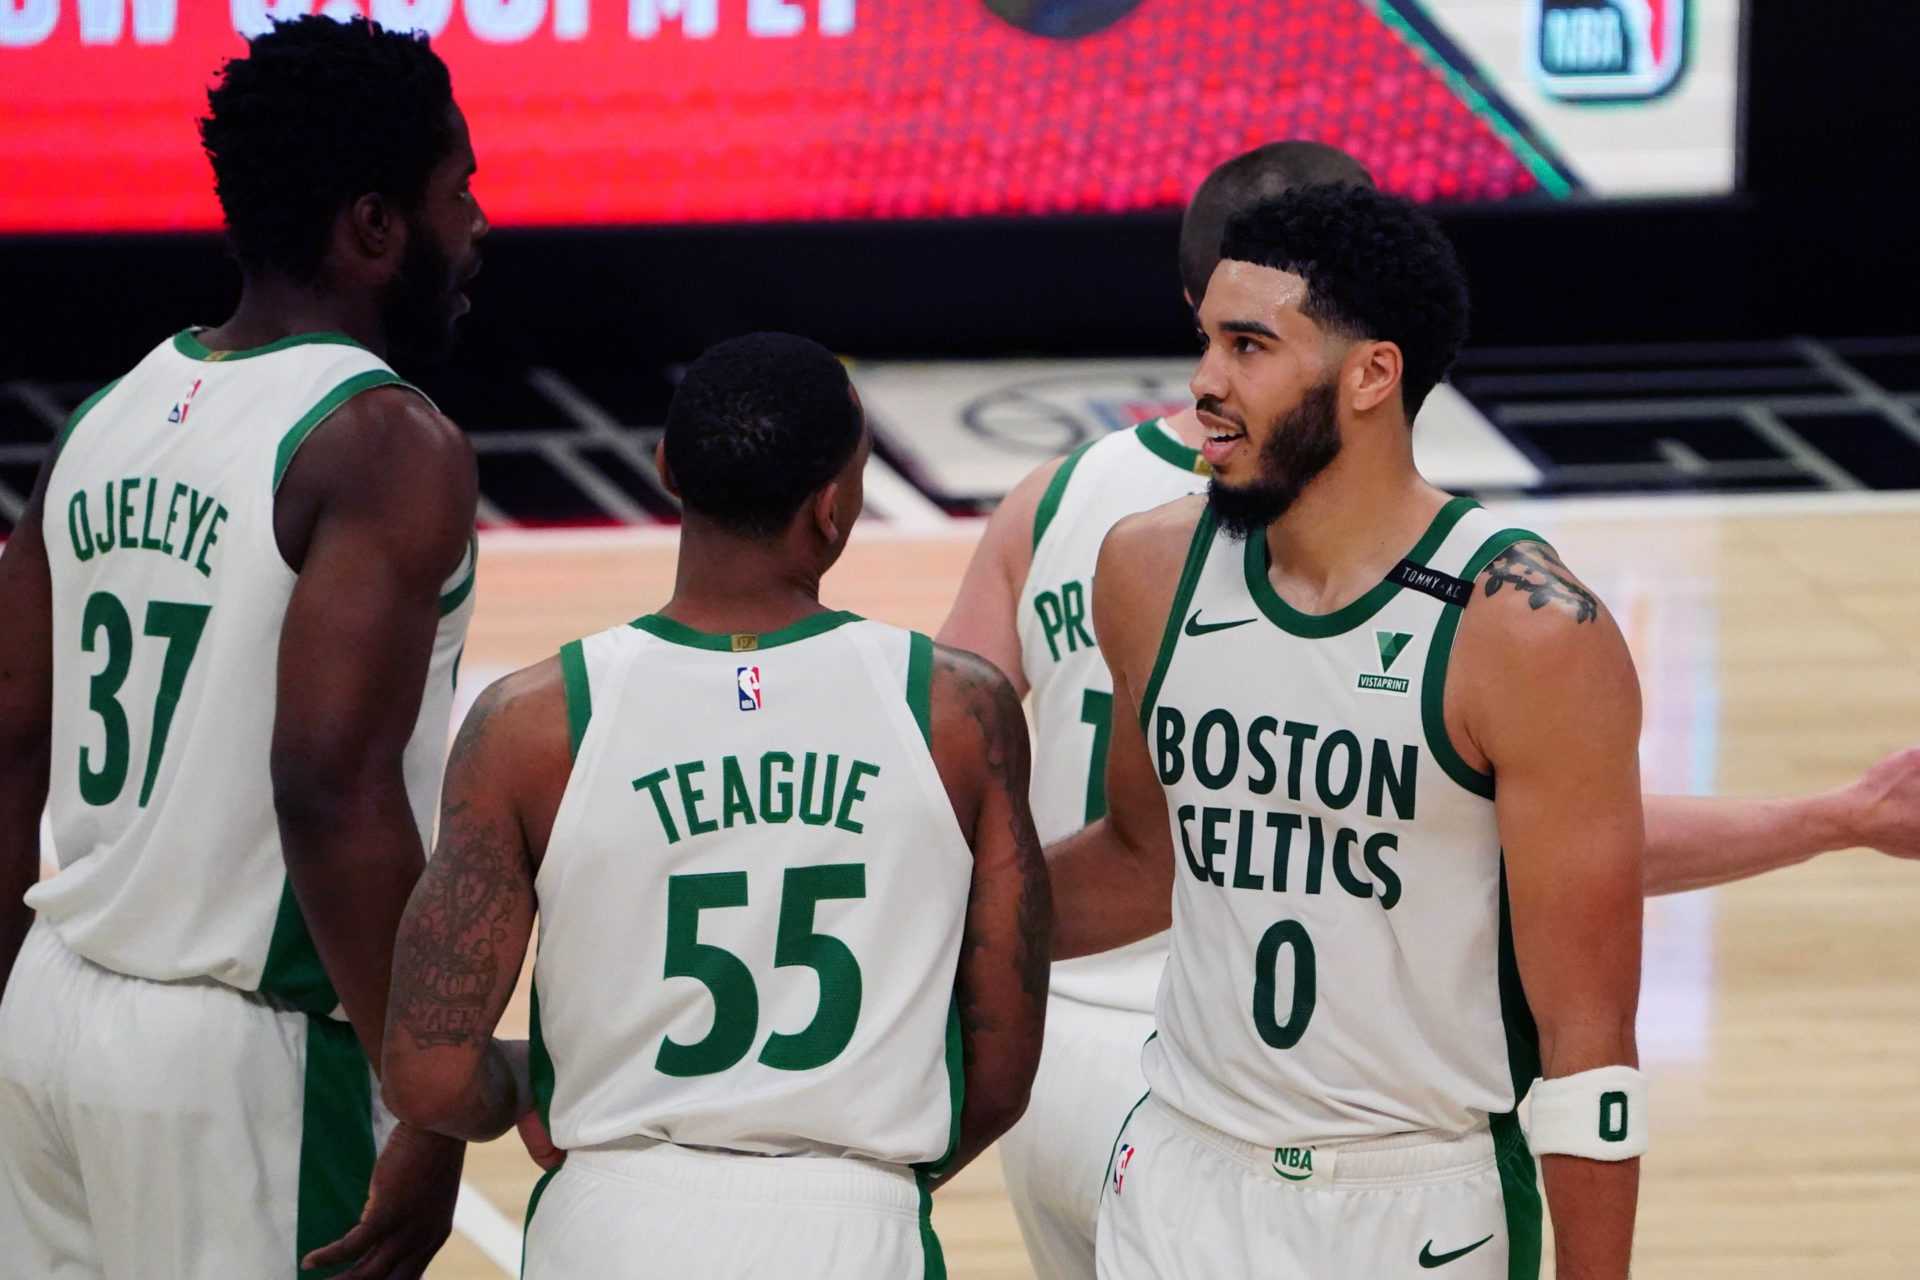 Jayson Tatum jouera-t-il ce soir?  Boston Celtics vs New Orleans Pelicans - Actualités de l'équipe, composition, prédiction